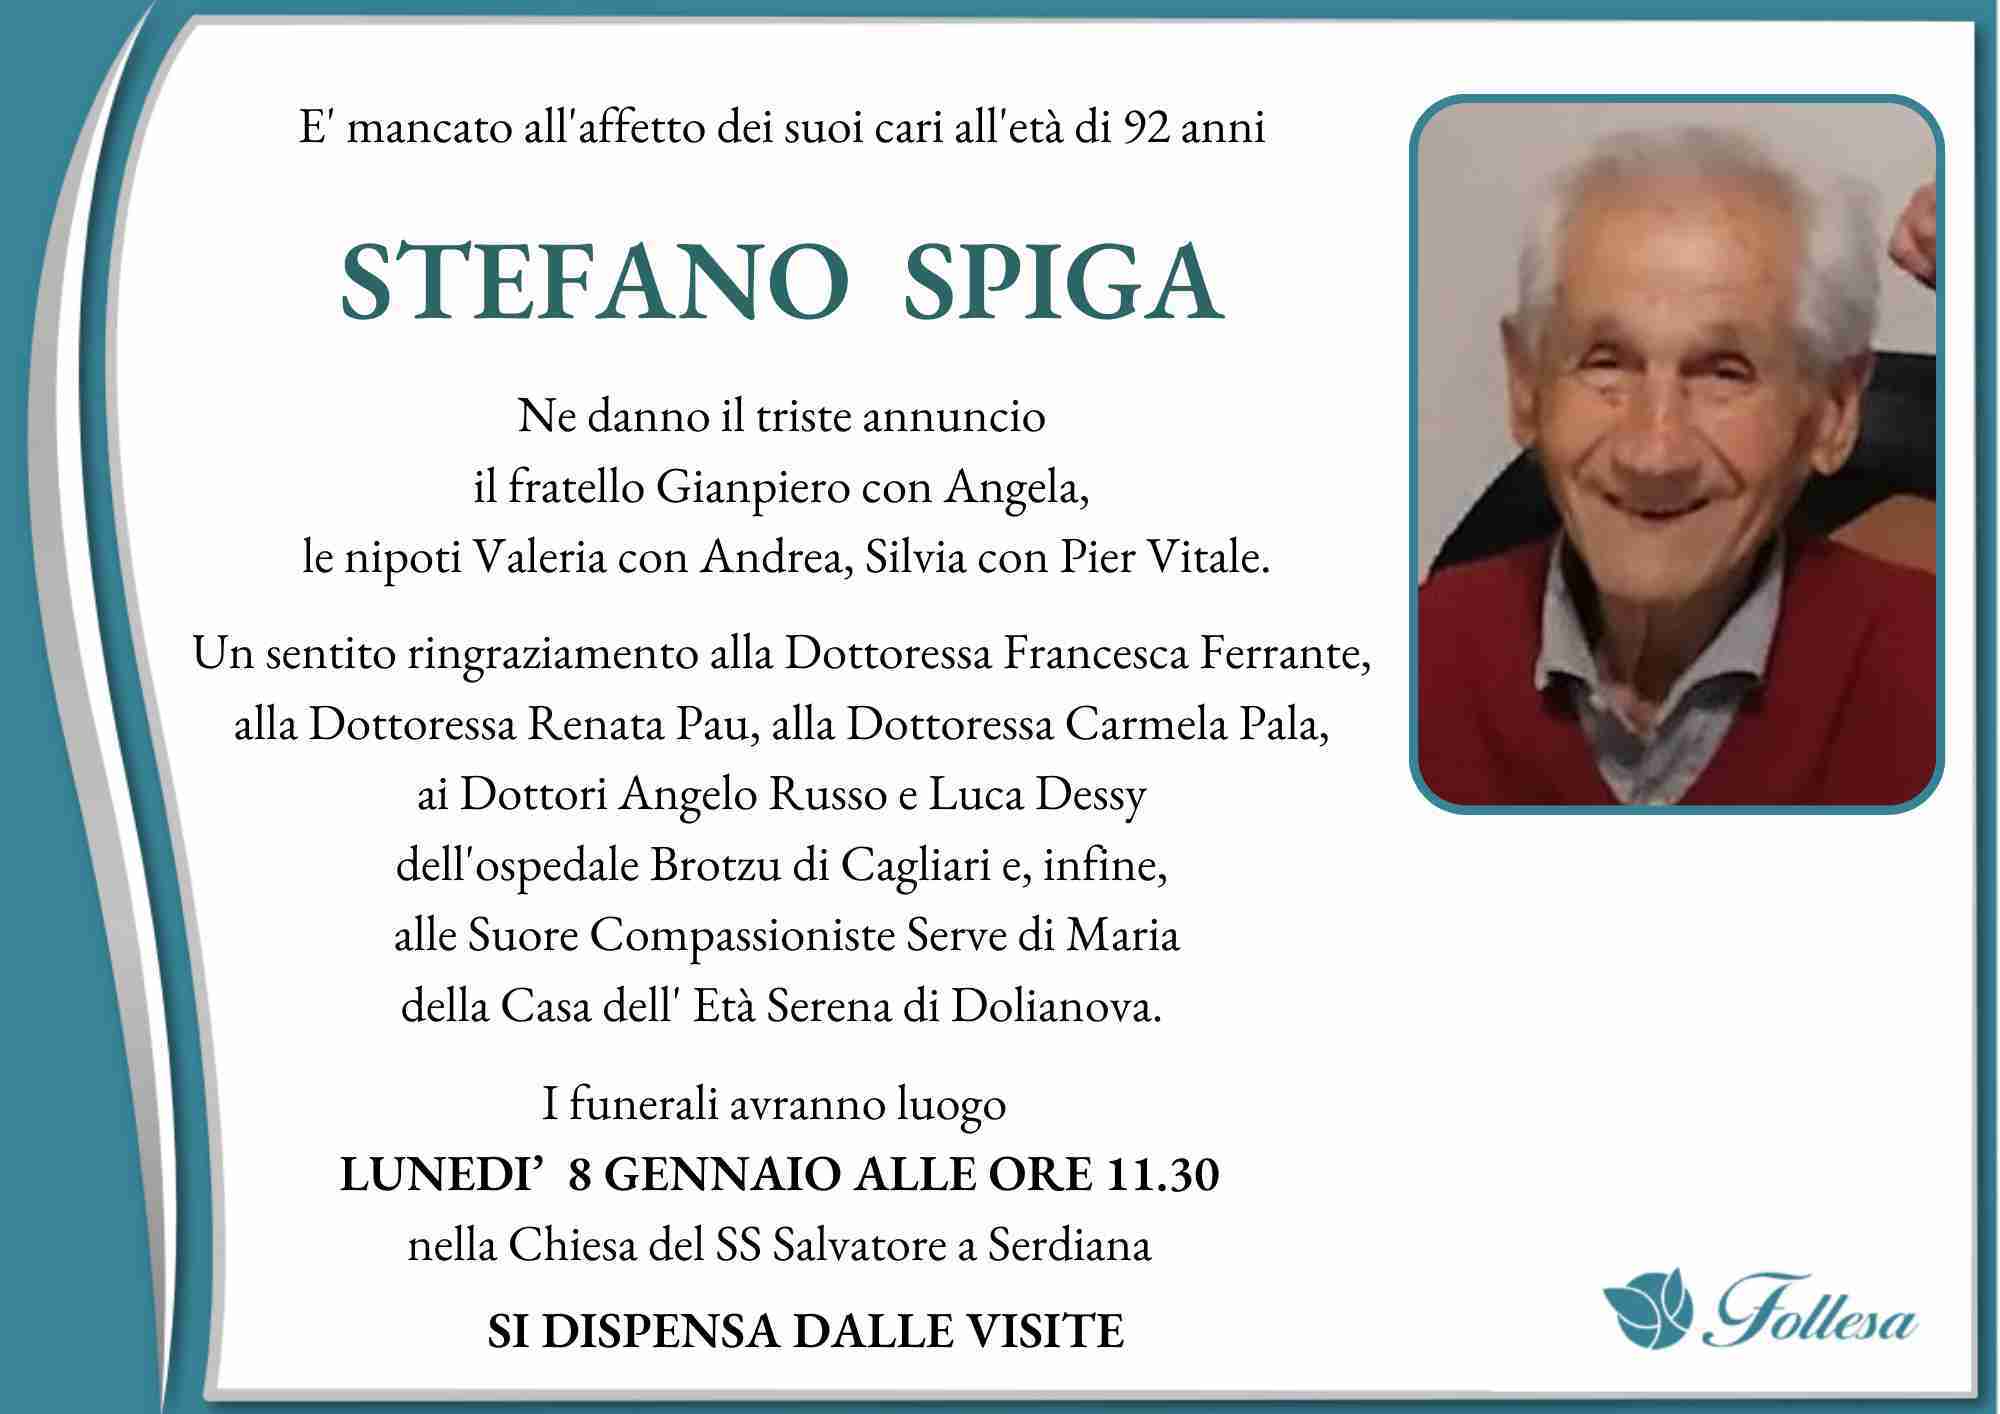 Stefano Spiga